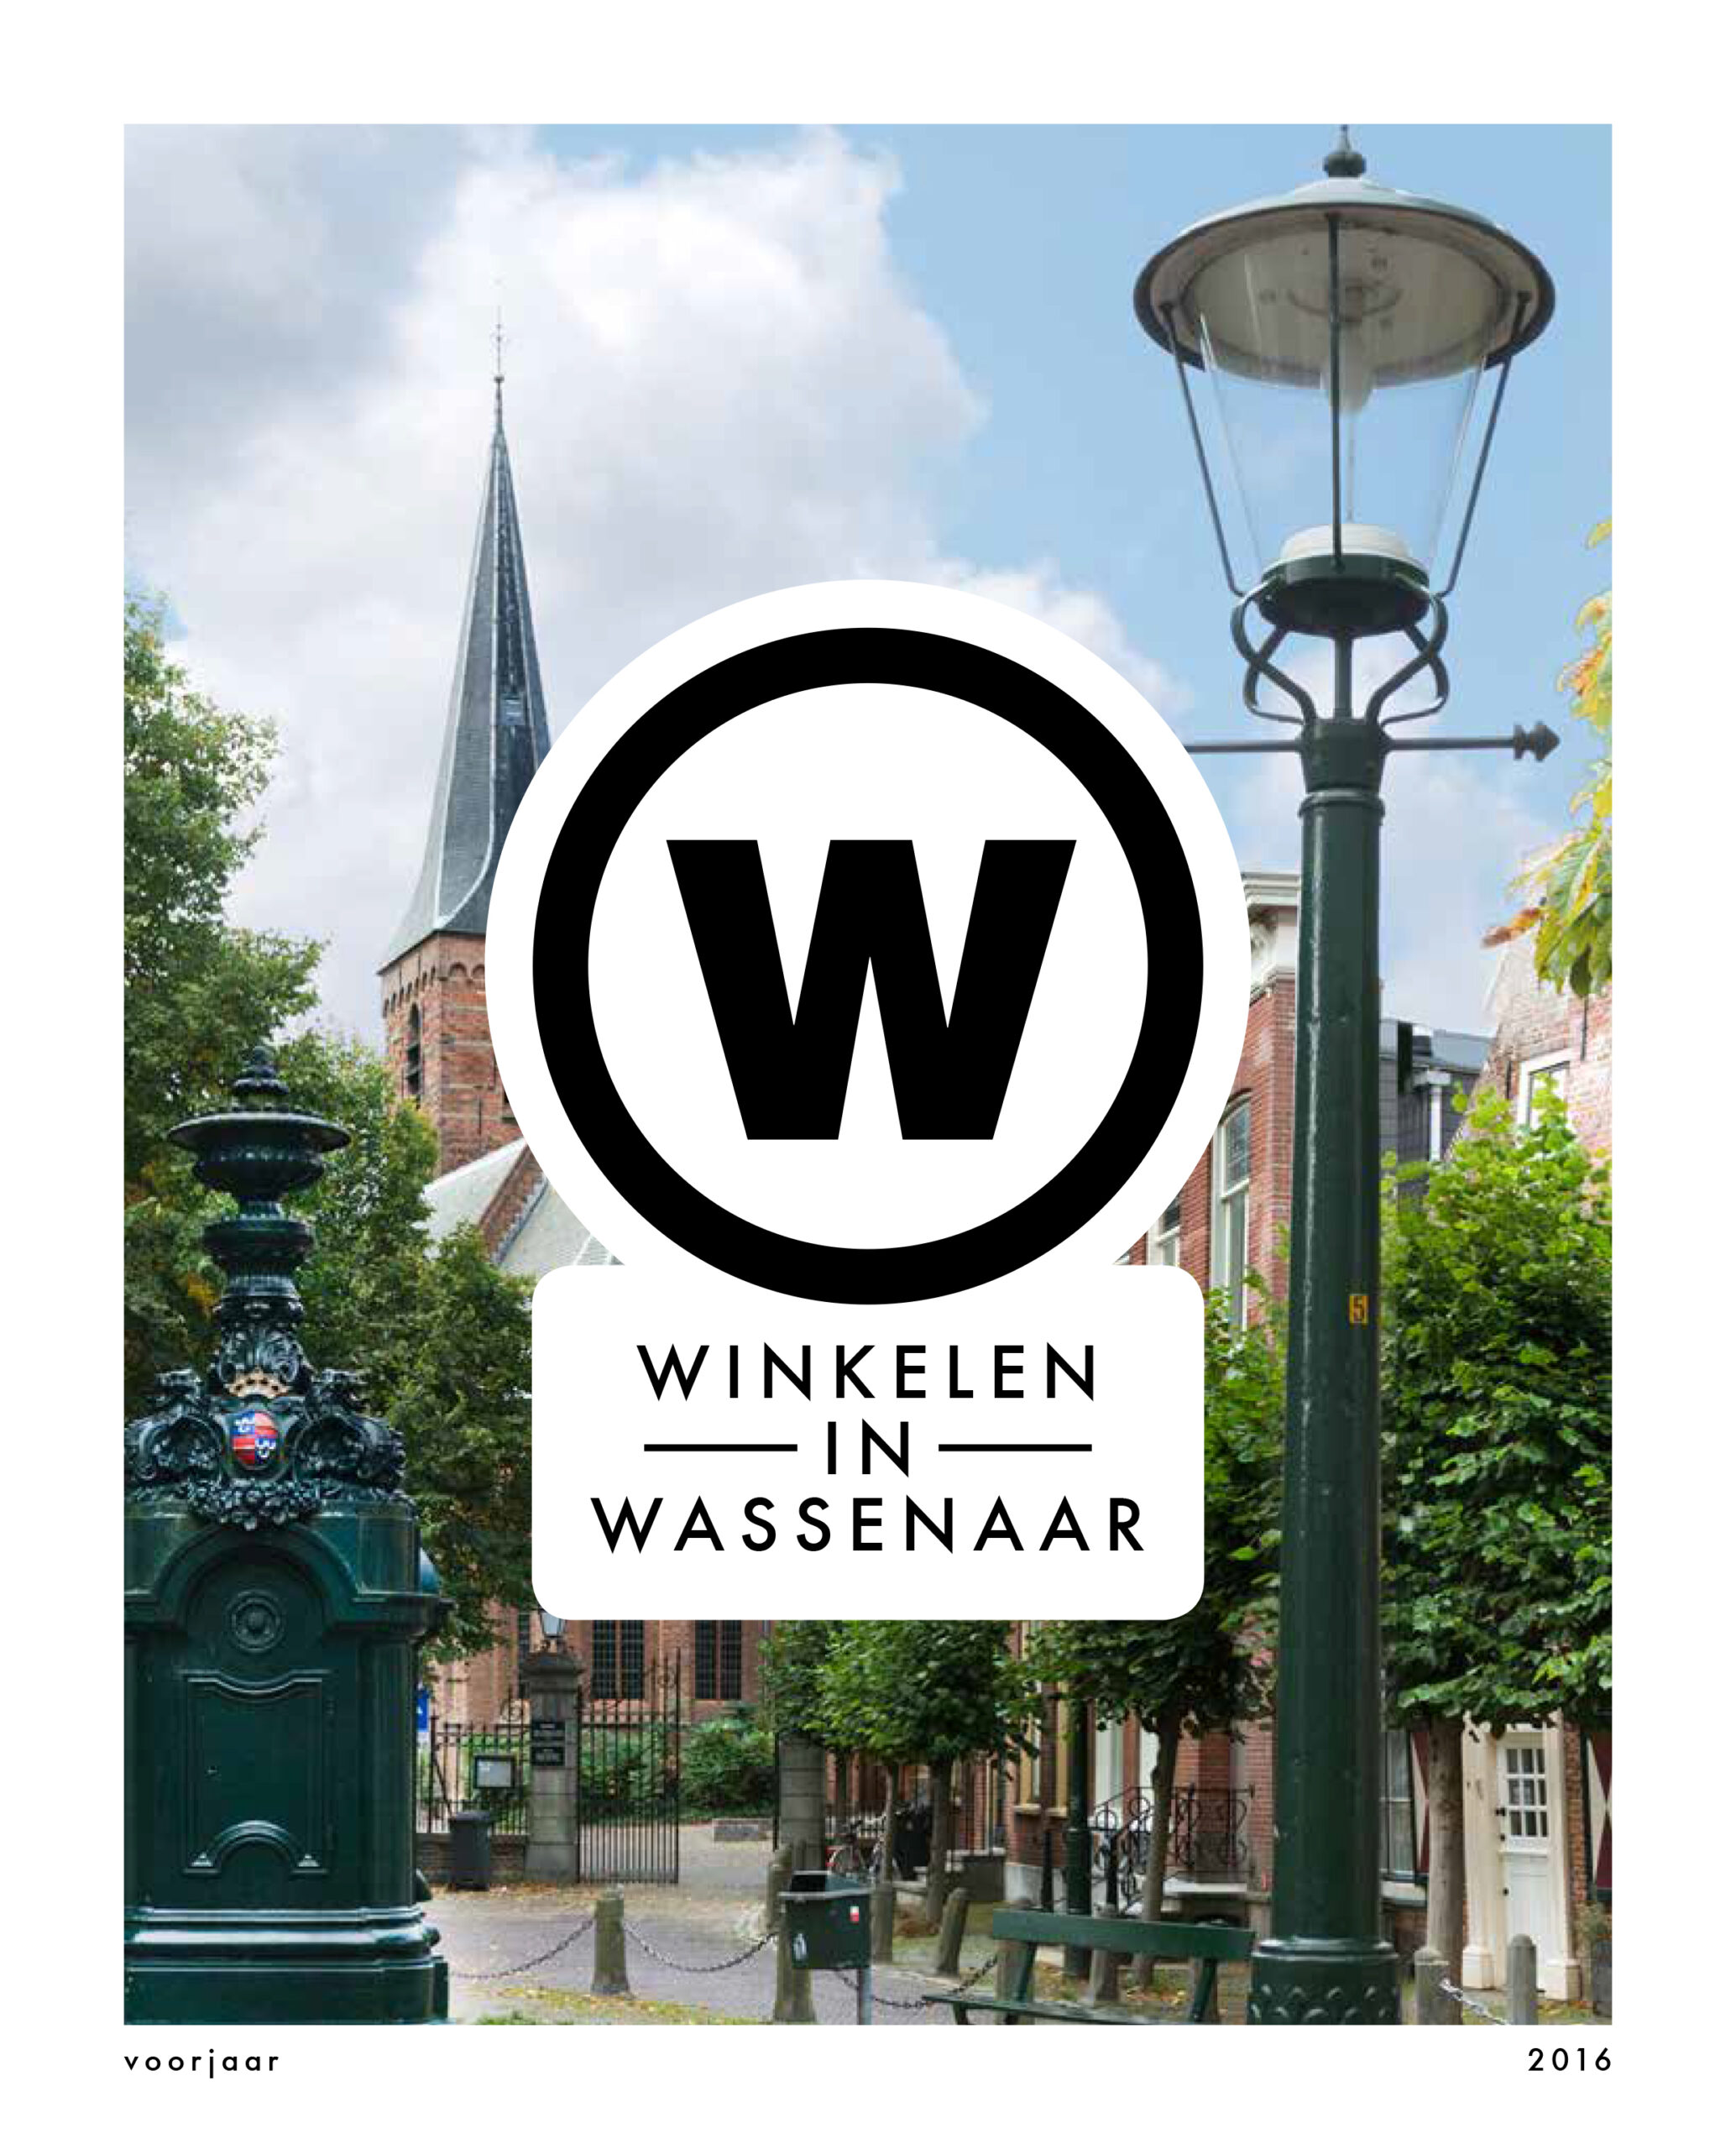 Winkelen in Wassenaar – Voorjaar 2016